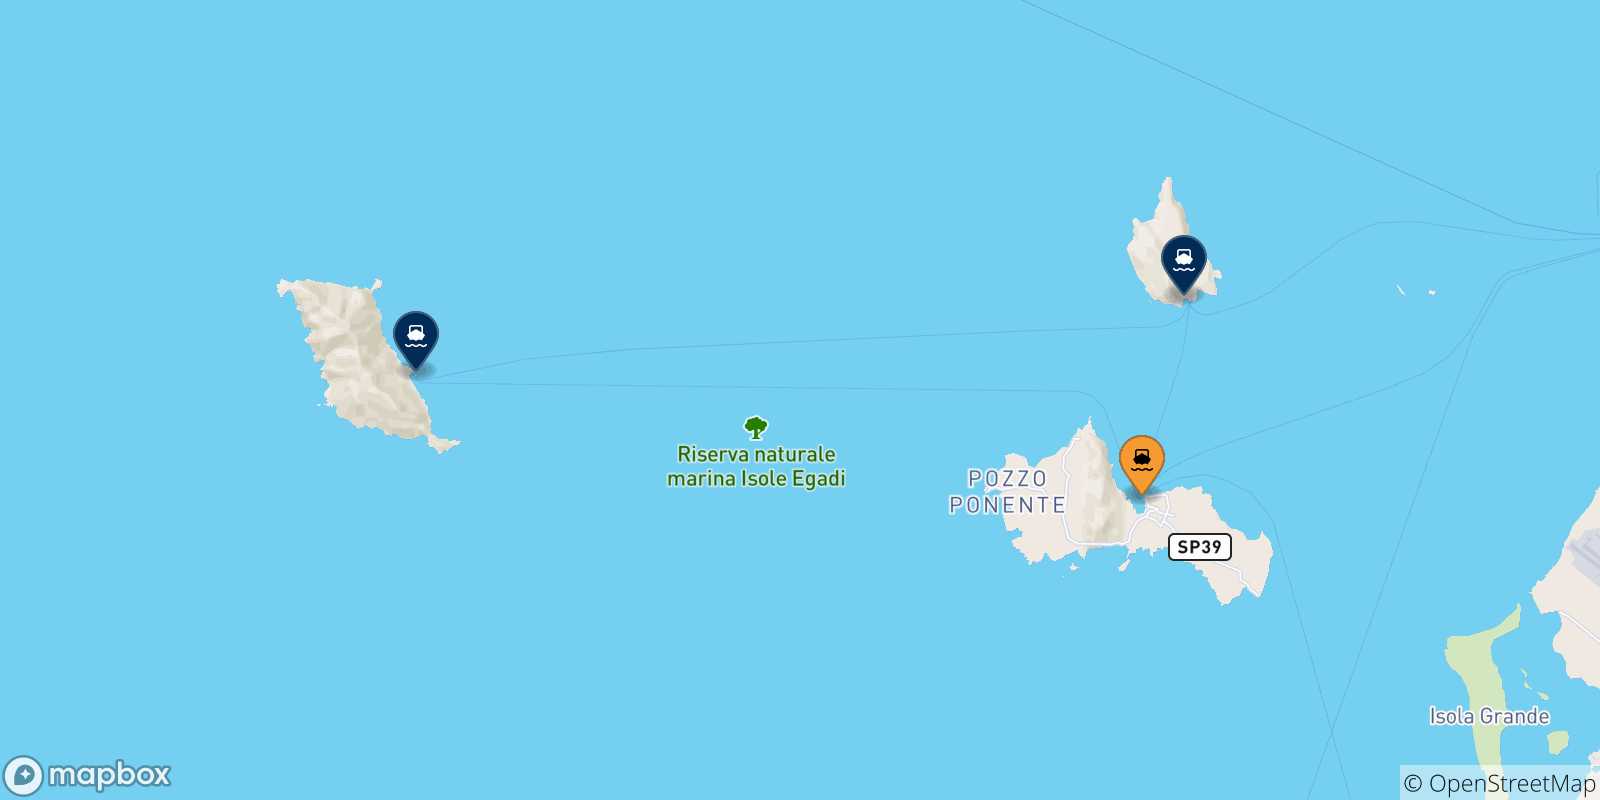 Mappa delle possibili rotte tra Favignana e le Isole Egadi